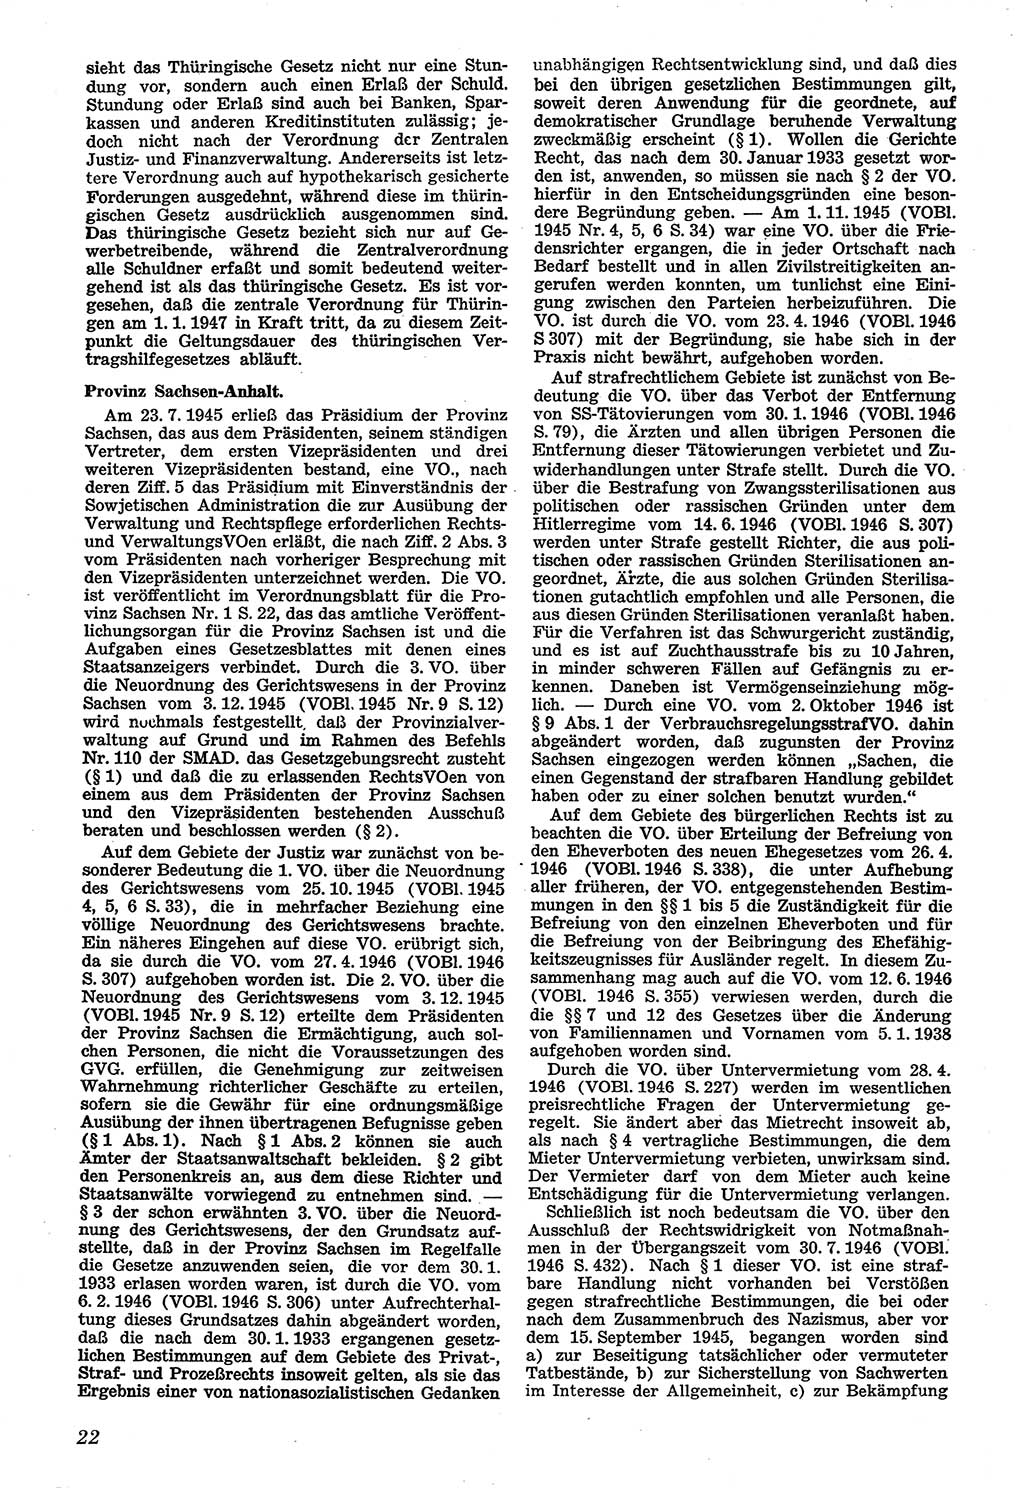 Neue Justiz (NJ), Zeitschrift für Recht und Rechtswissenschaft [Sowjetische Besatzungszone (SBZ) Deutschland], 1. Jahrgang 1947, Seite 22 (NJ SBZ Dtl. 1947, S. 22)